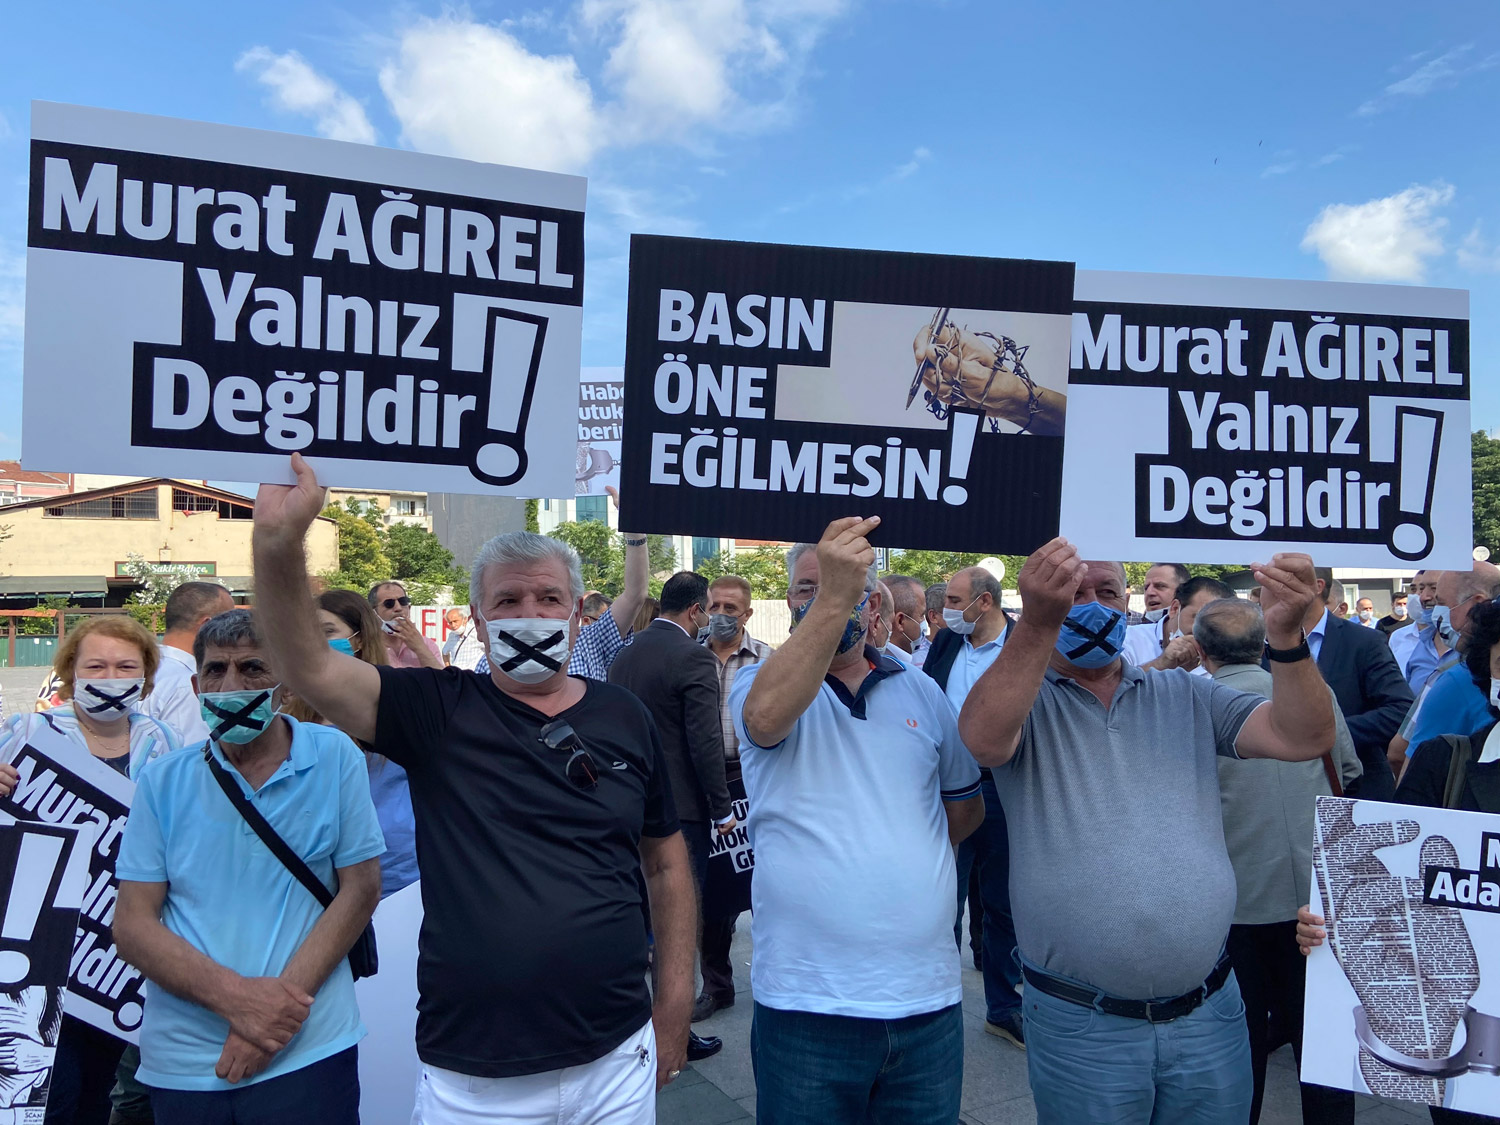 تركيا أصبحت أكبر سجن للصحافيين تحت نظام أردوغان